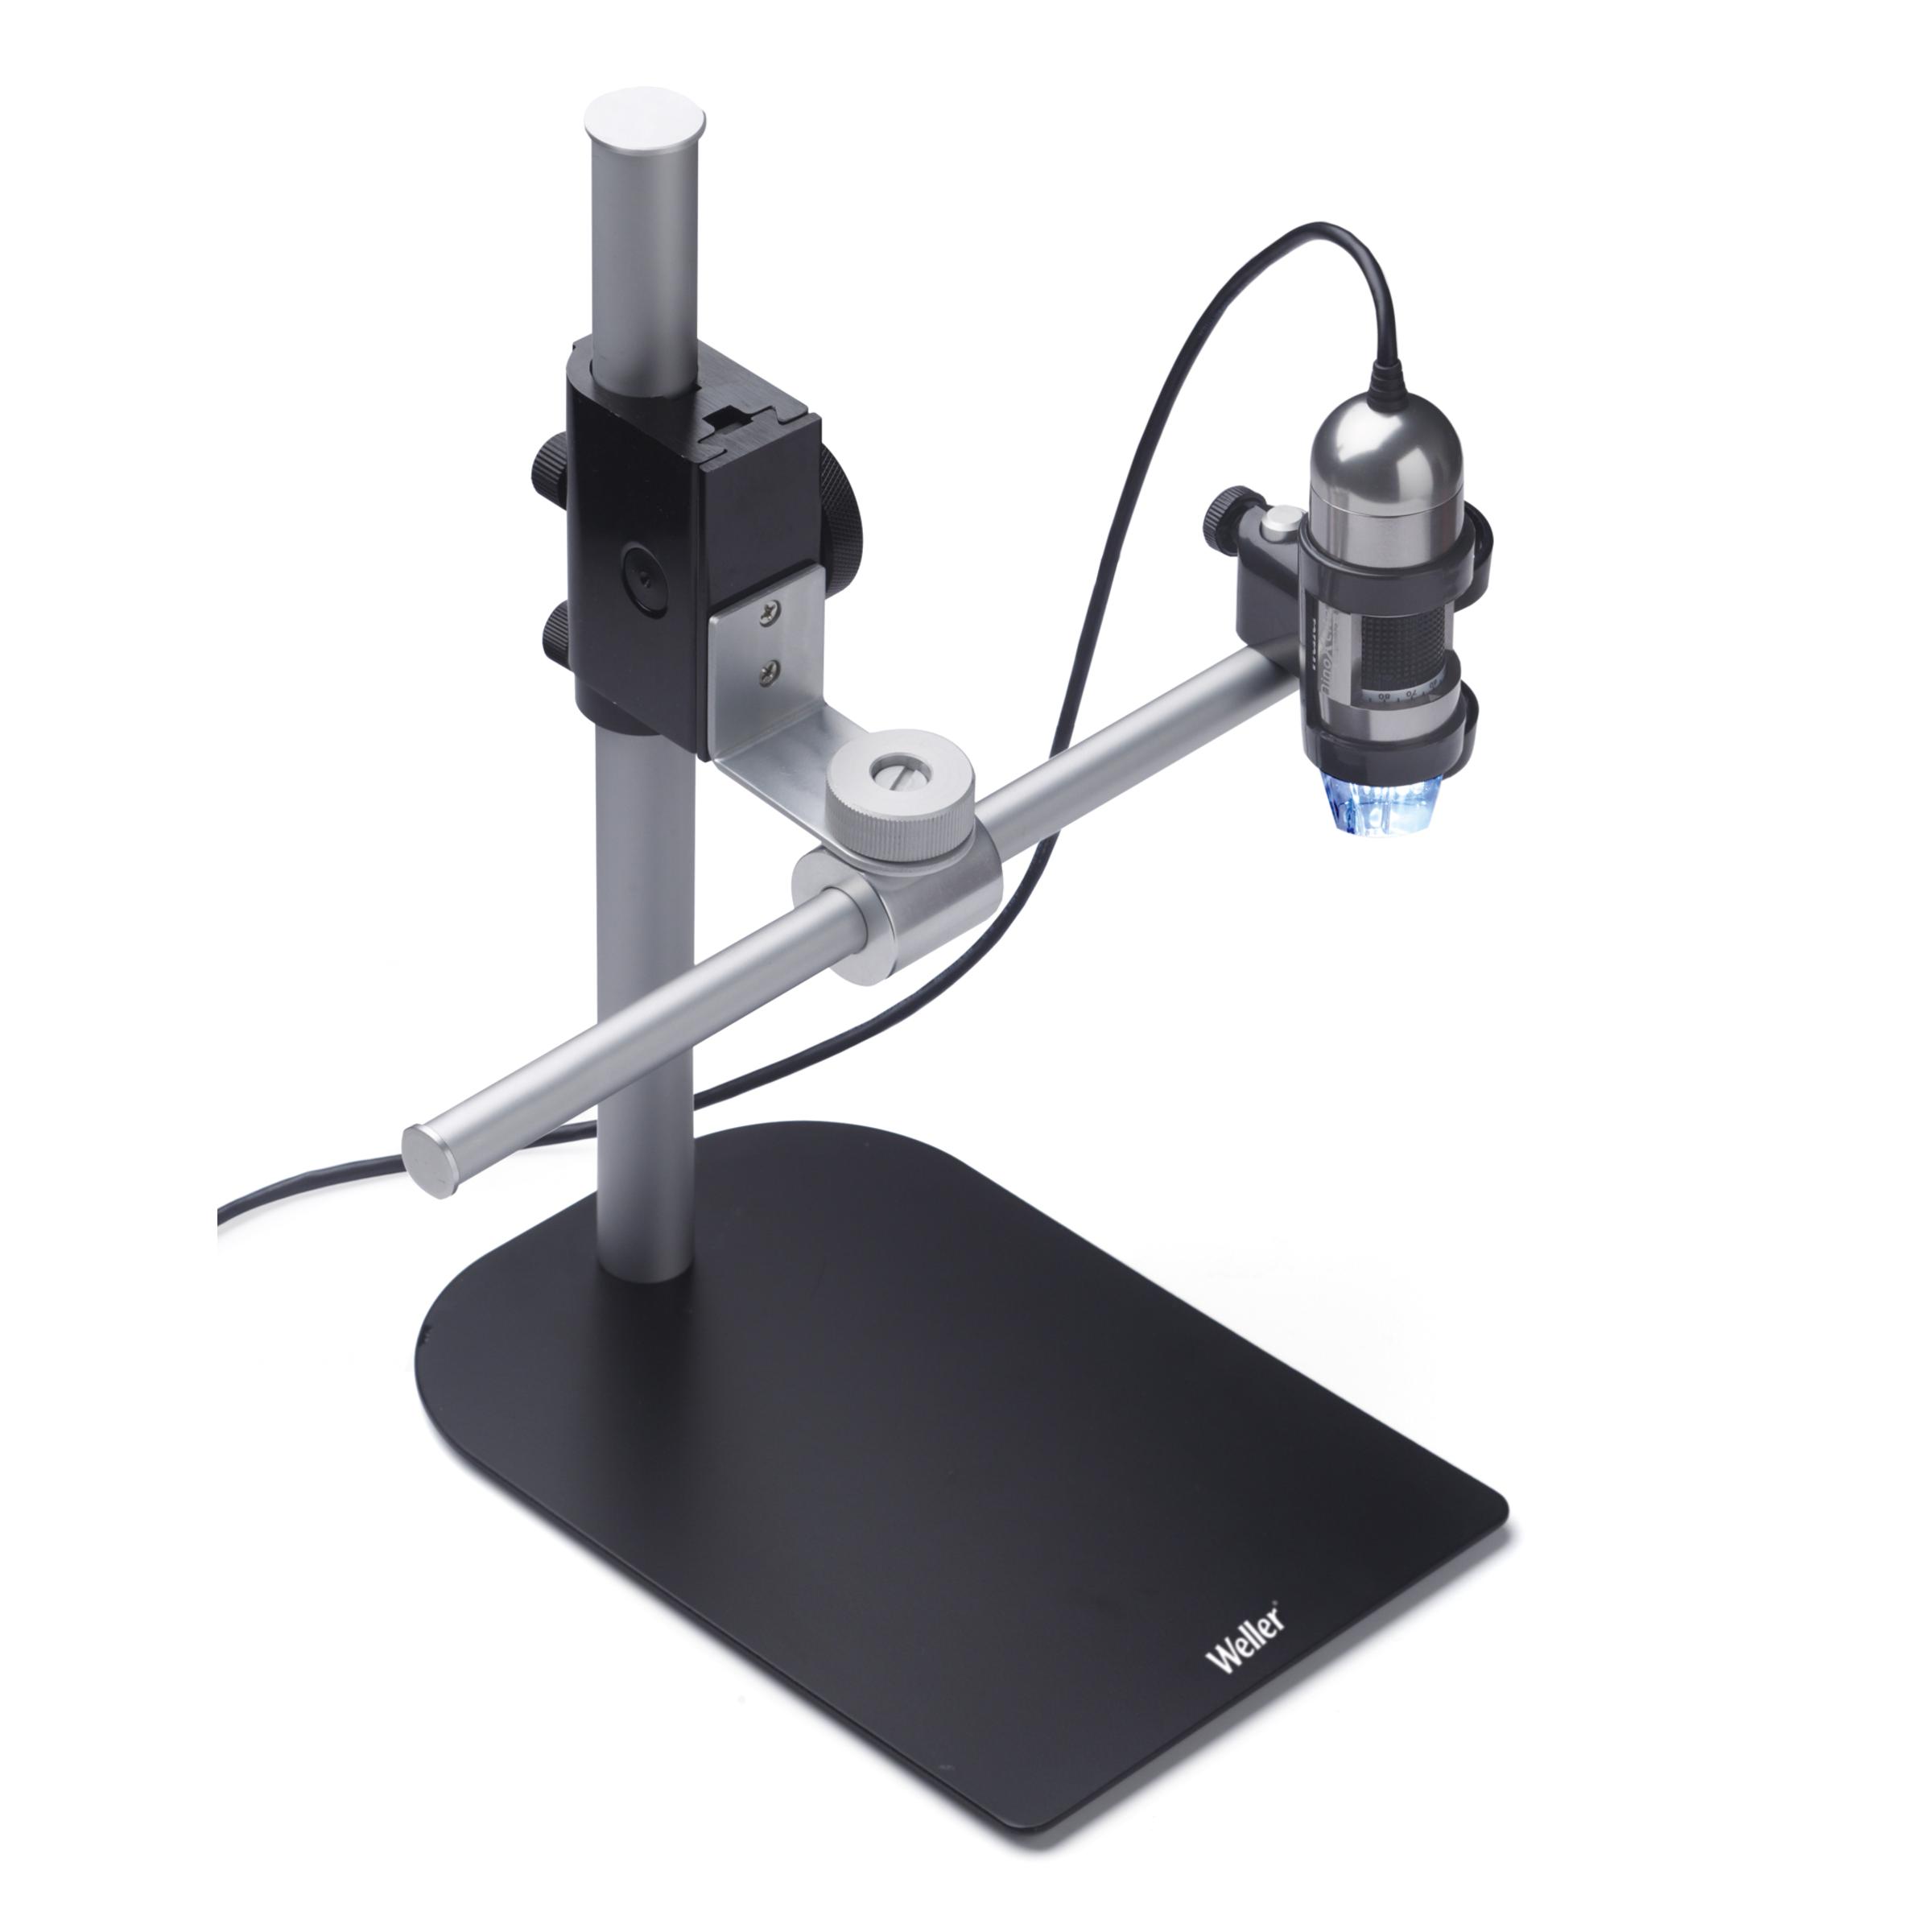 USB - микроскоп с регулируемой стойкой арт. 0051383599N